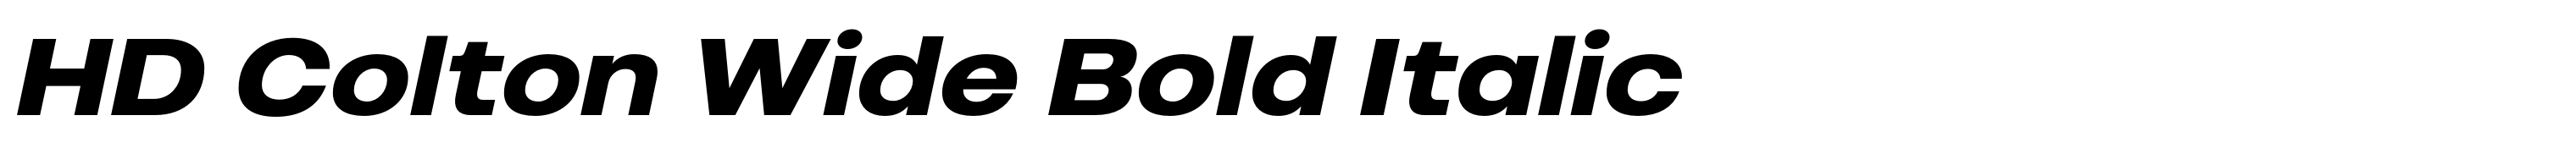 HD Colton Wide Bold Italic